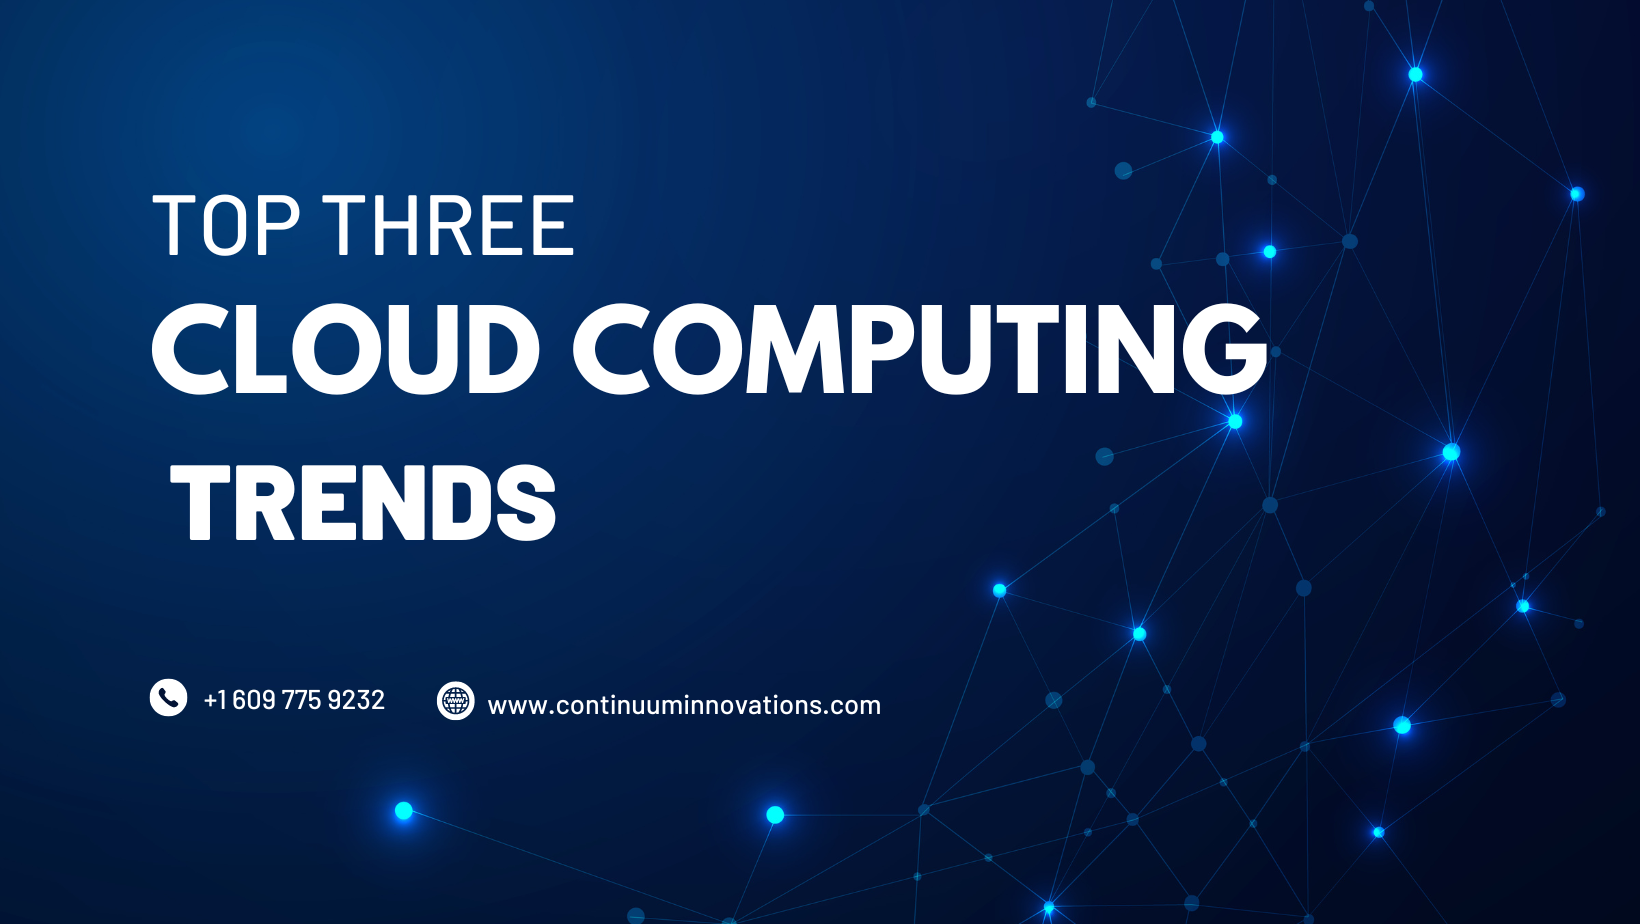 Top cloud computing trends 2022